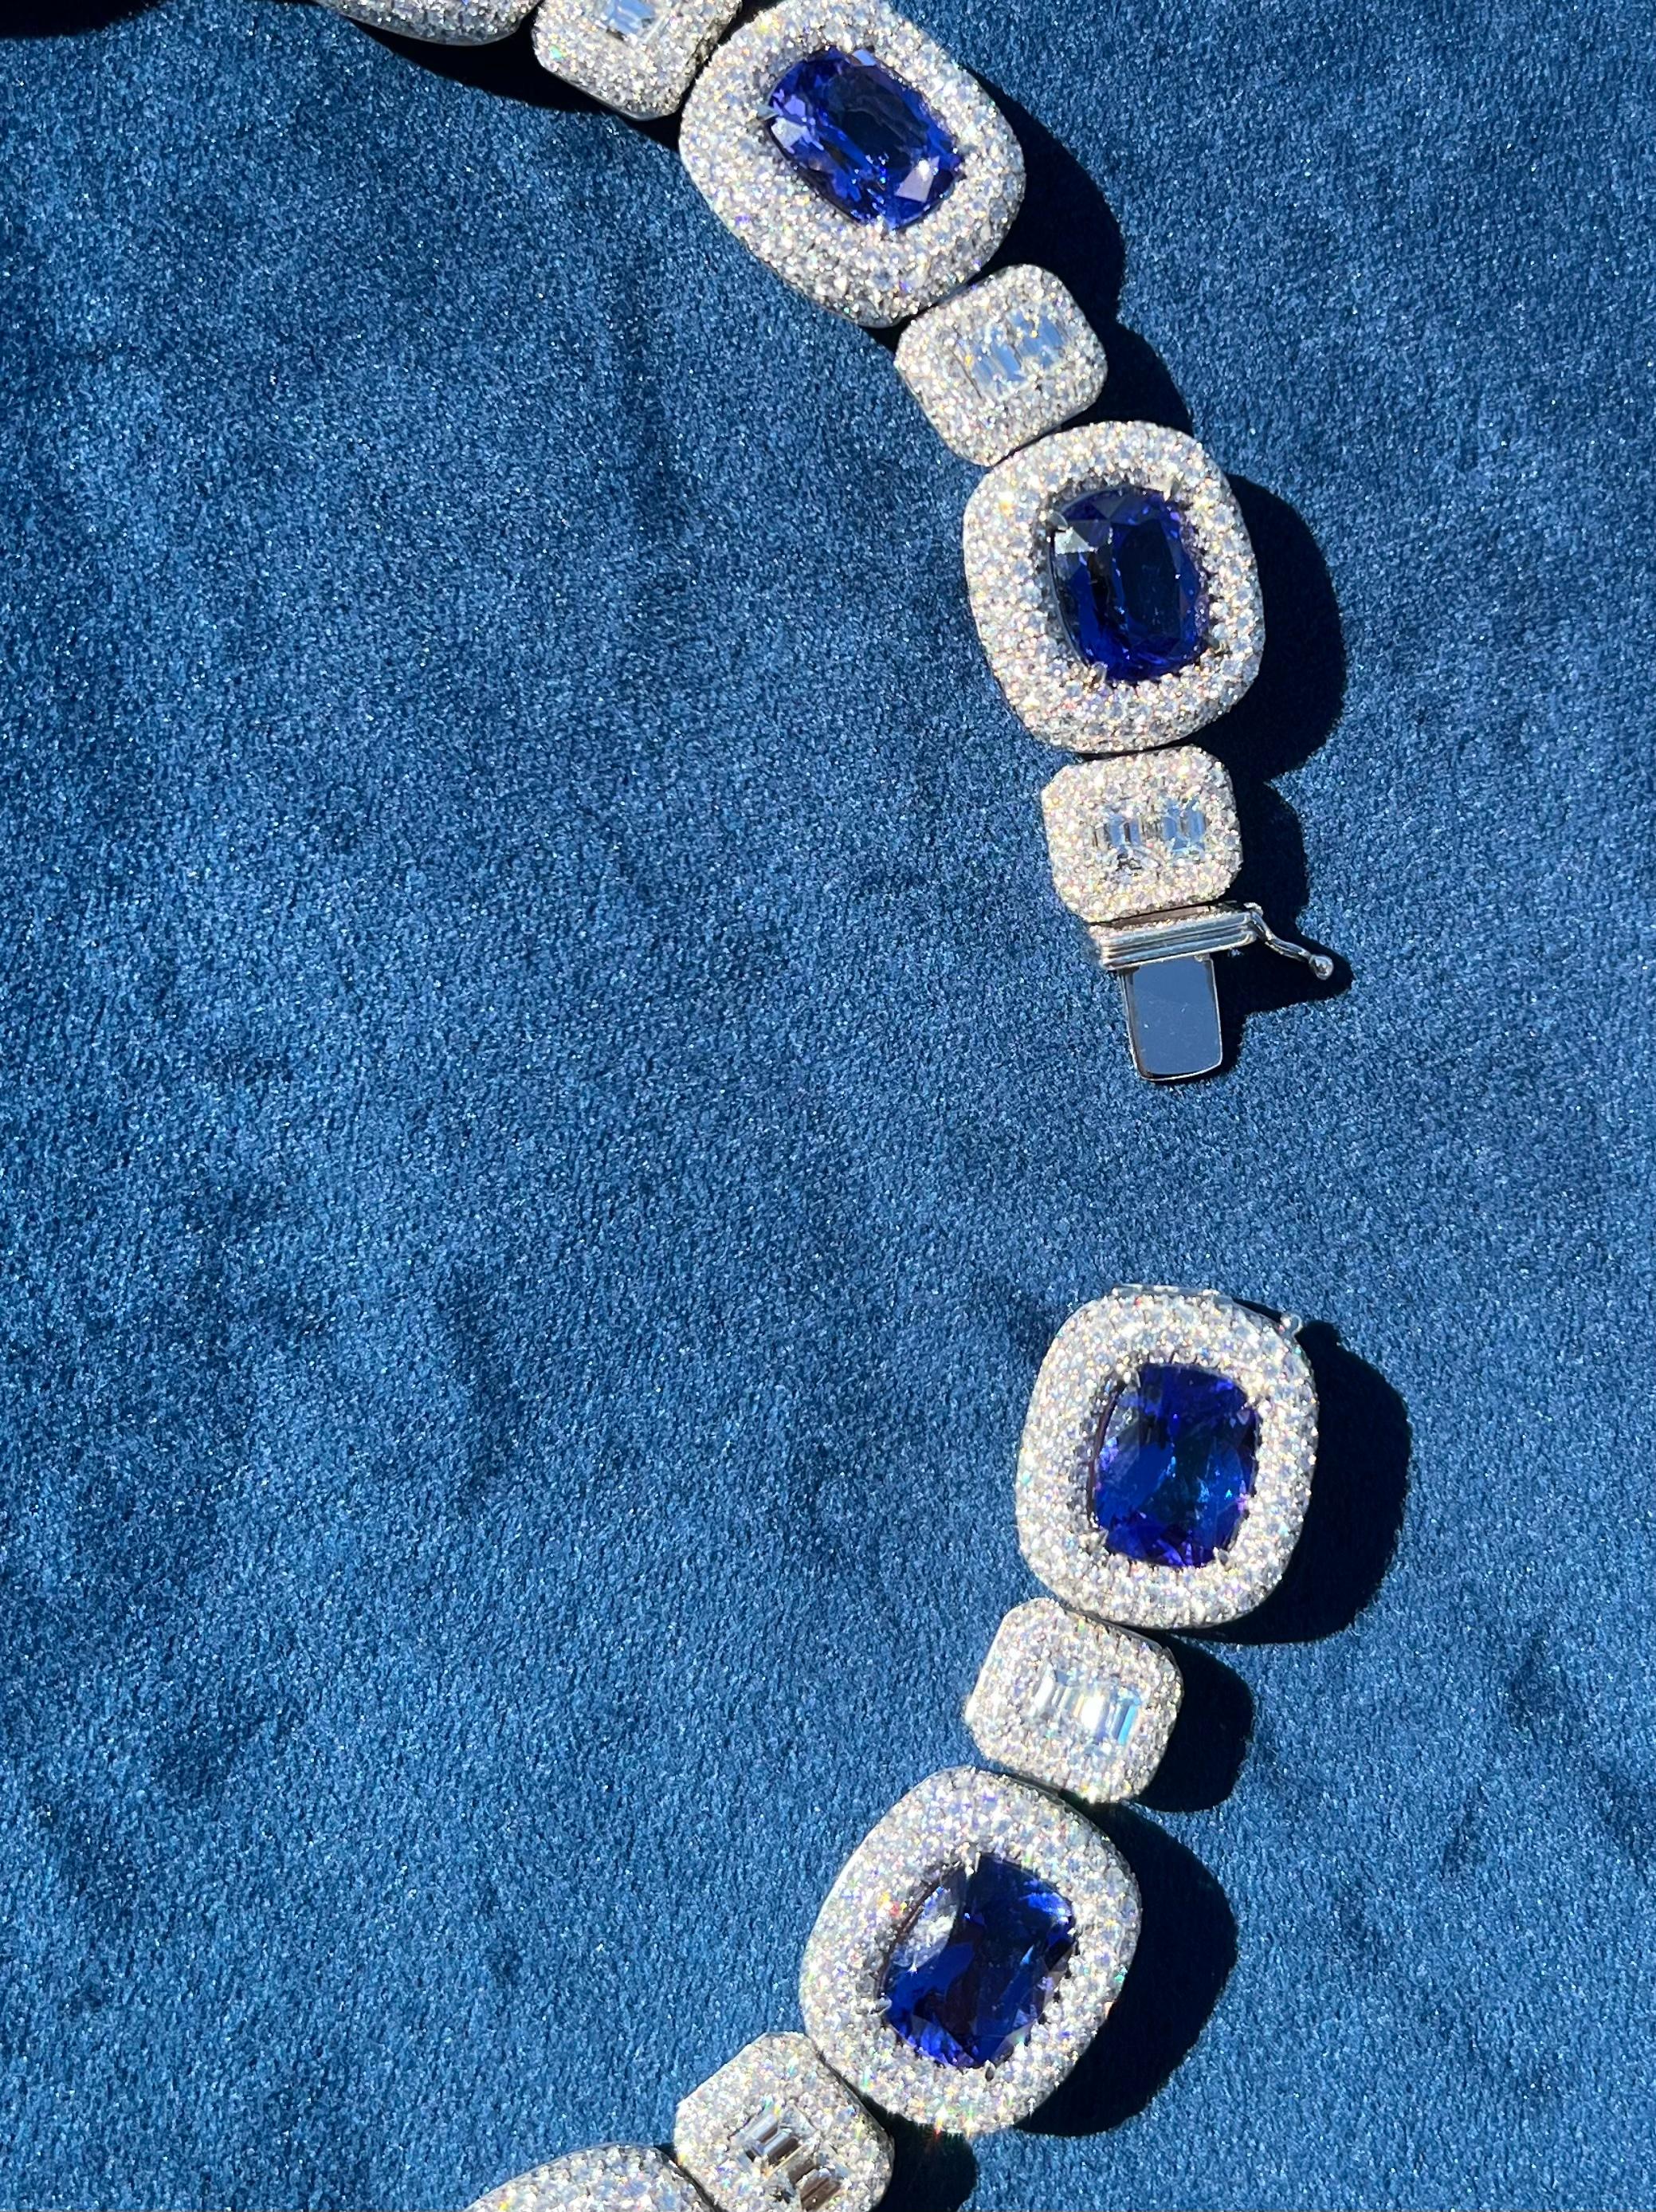 Opulent 211 Carat AAAA Intense Blue Tanzanite and Diamond 18 Karat Gold Necklace 5